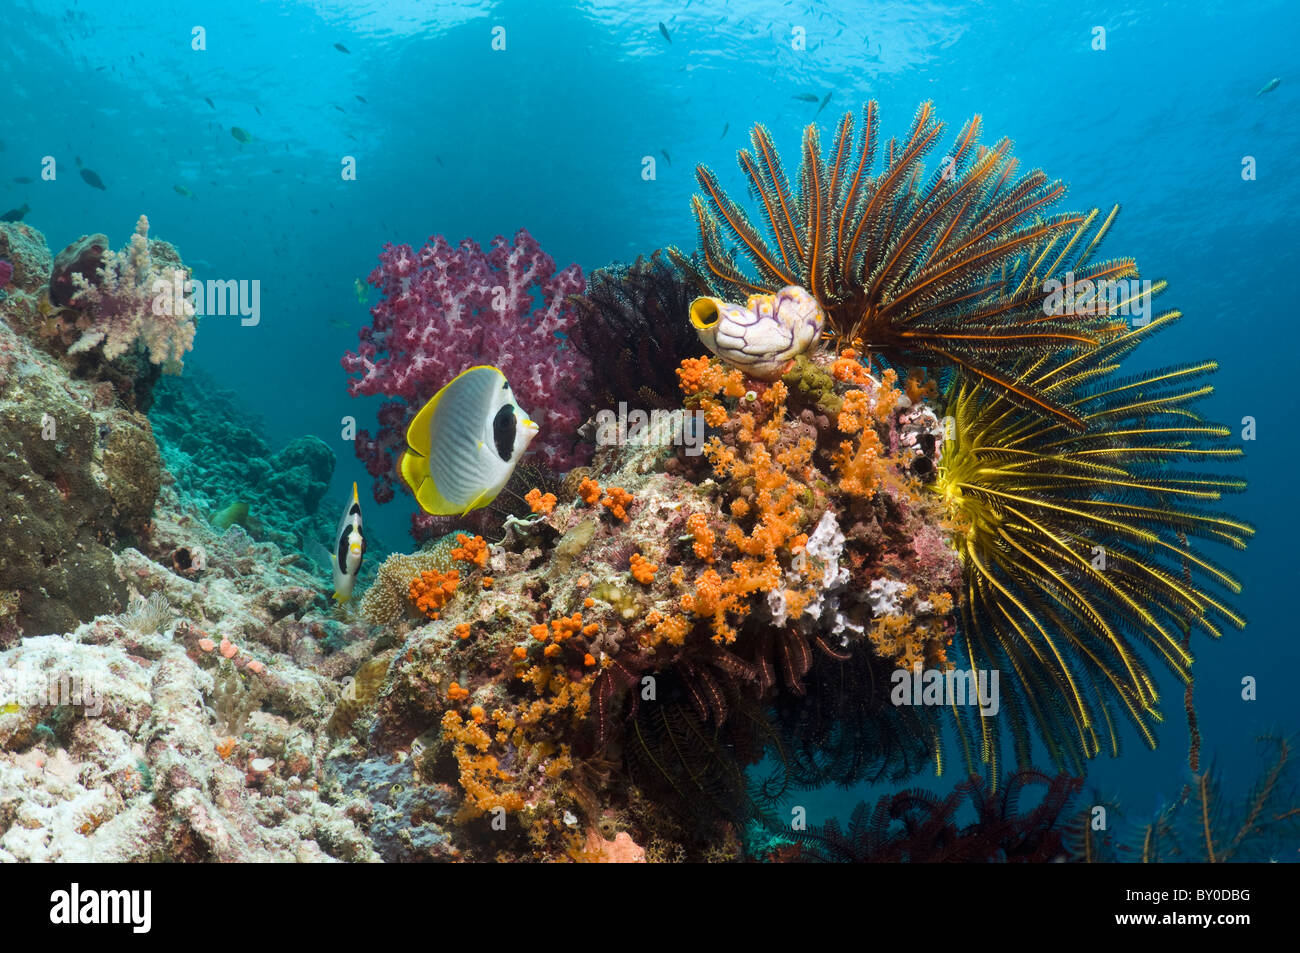 Korallenriff-Landschaft mit Panda Butterflyfish (Chaetodontidae Adiergastos) Seelilien, Weichkorallen und Seasquirt. Stockfoto